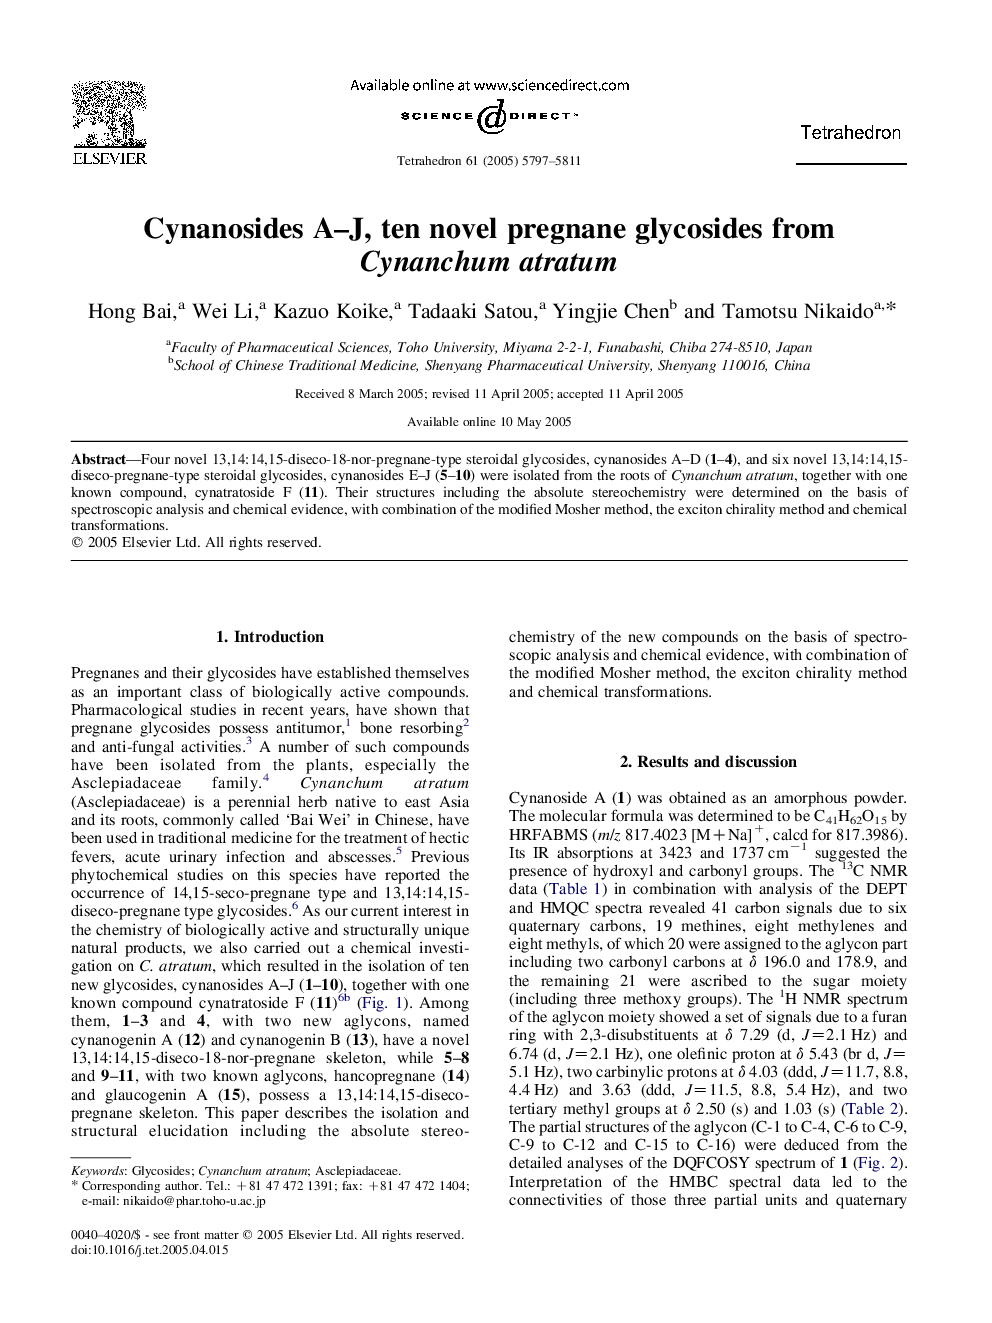 Cynanosides A-J, ten novel pregnane glycosides from Cynanchum atratum